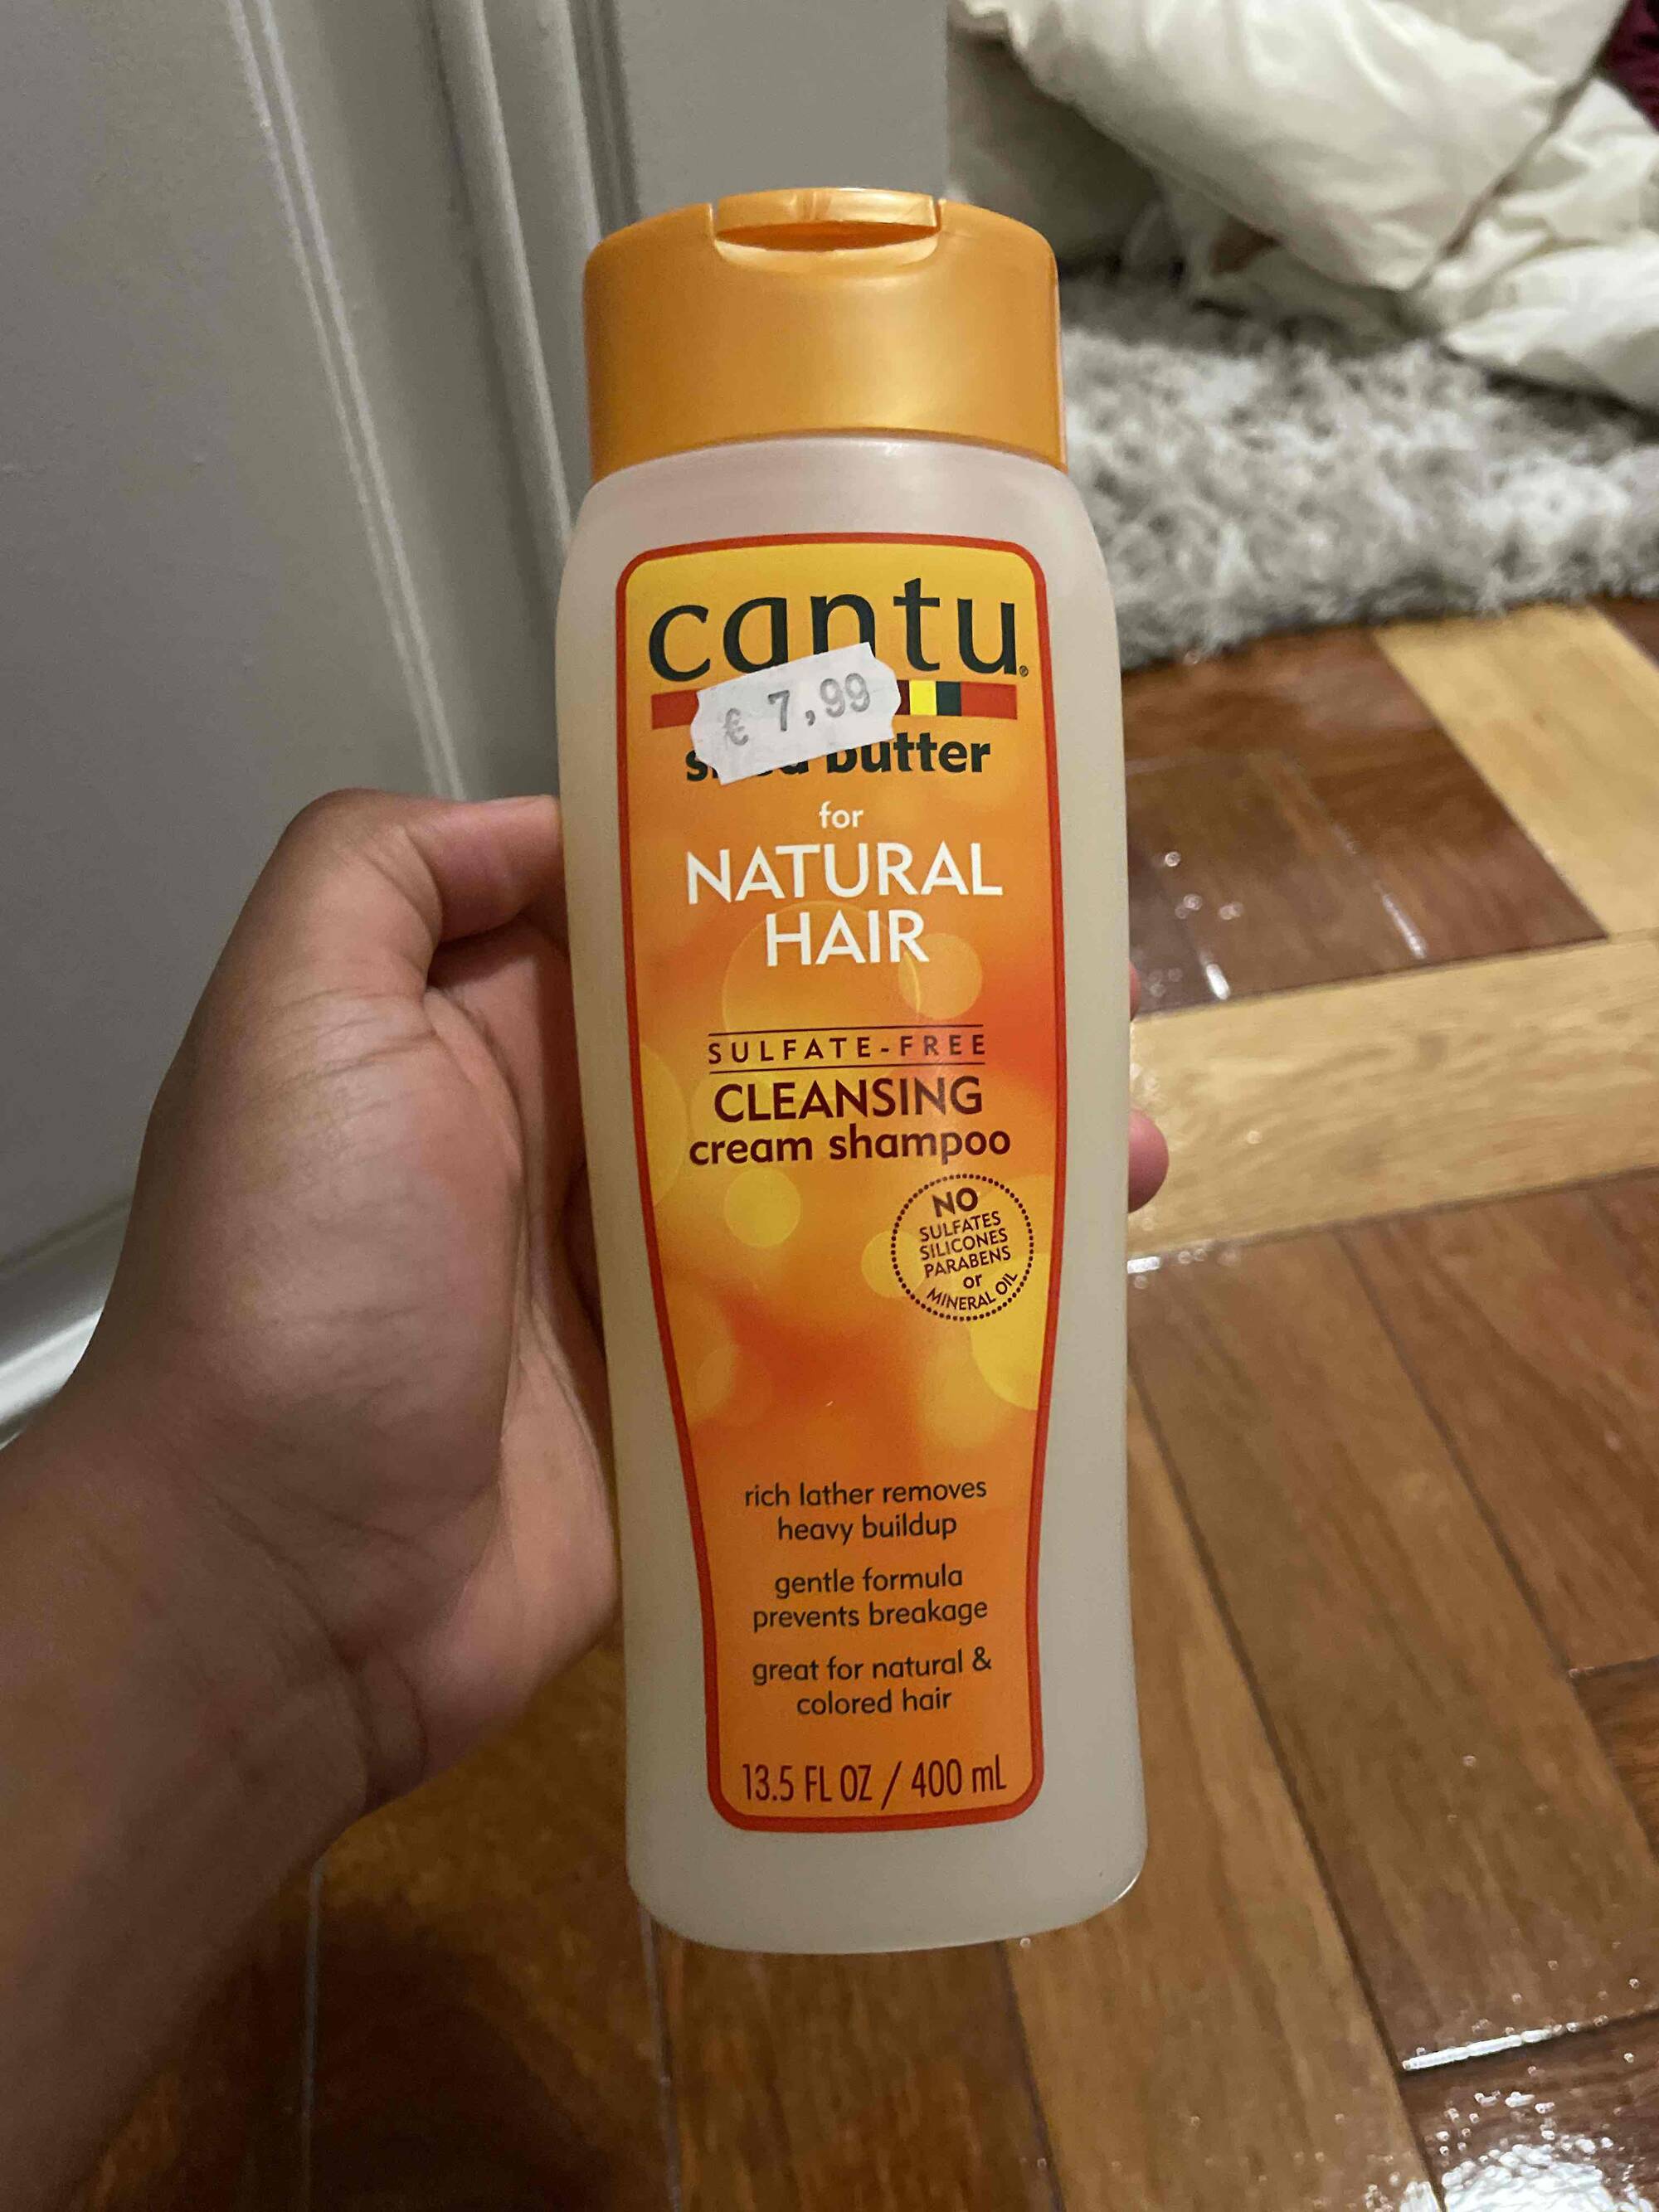 CANTU - Shea butter - Cleansing cream shampoo